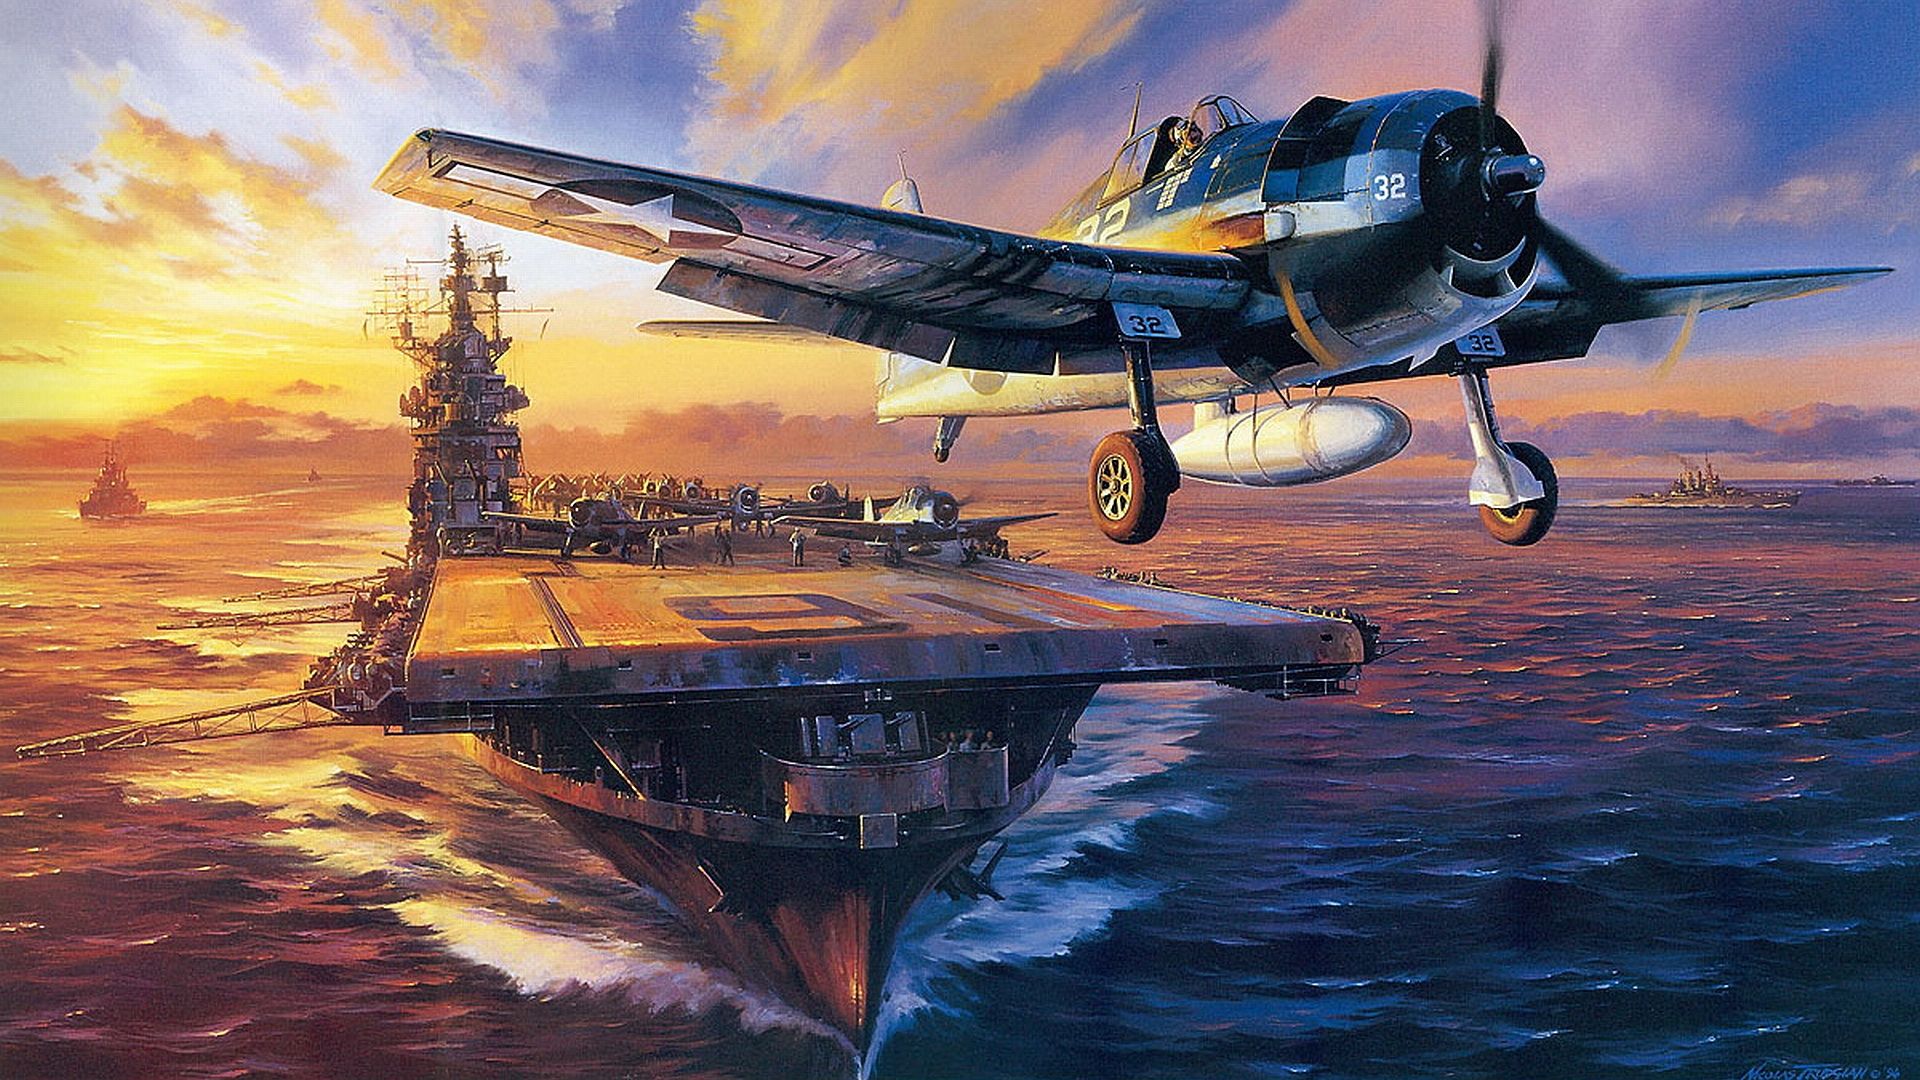 War Planes Wallpaper. Pixar Planes Wallpaper, World War 2 Planes Wallpaper and Turbine Airplanes HD Wallpaper